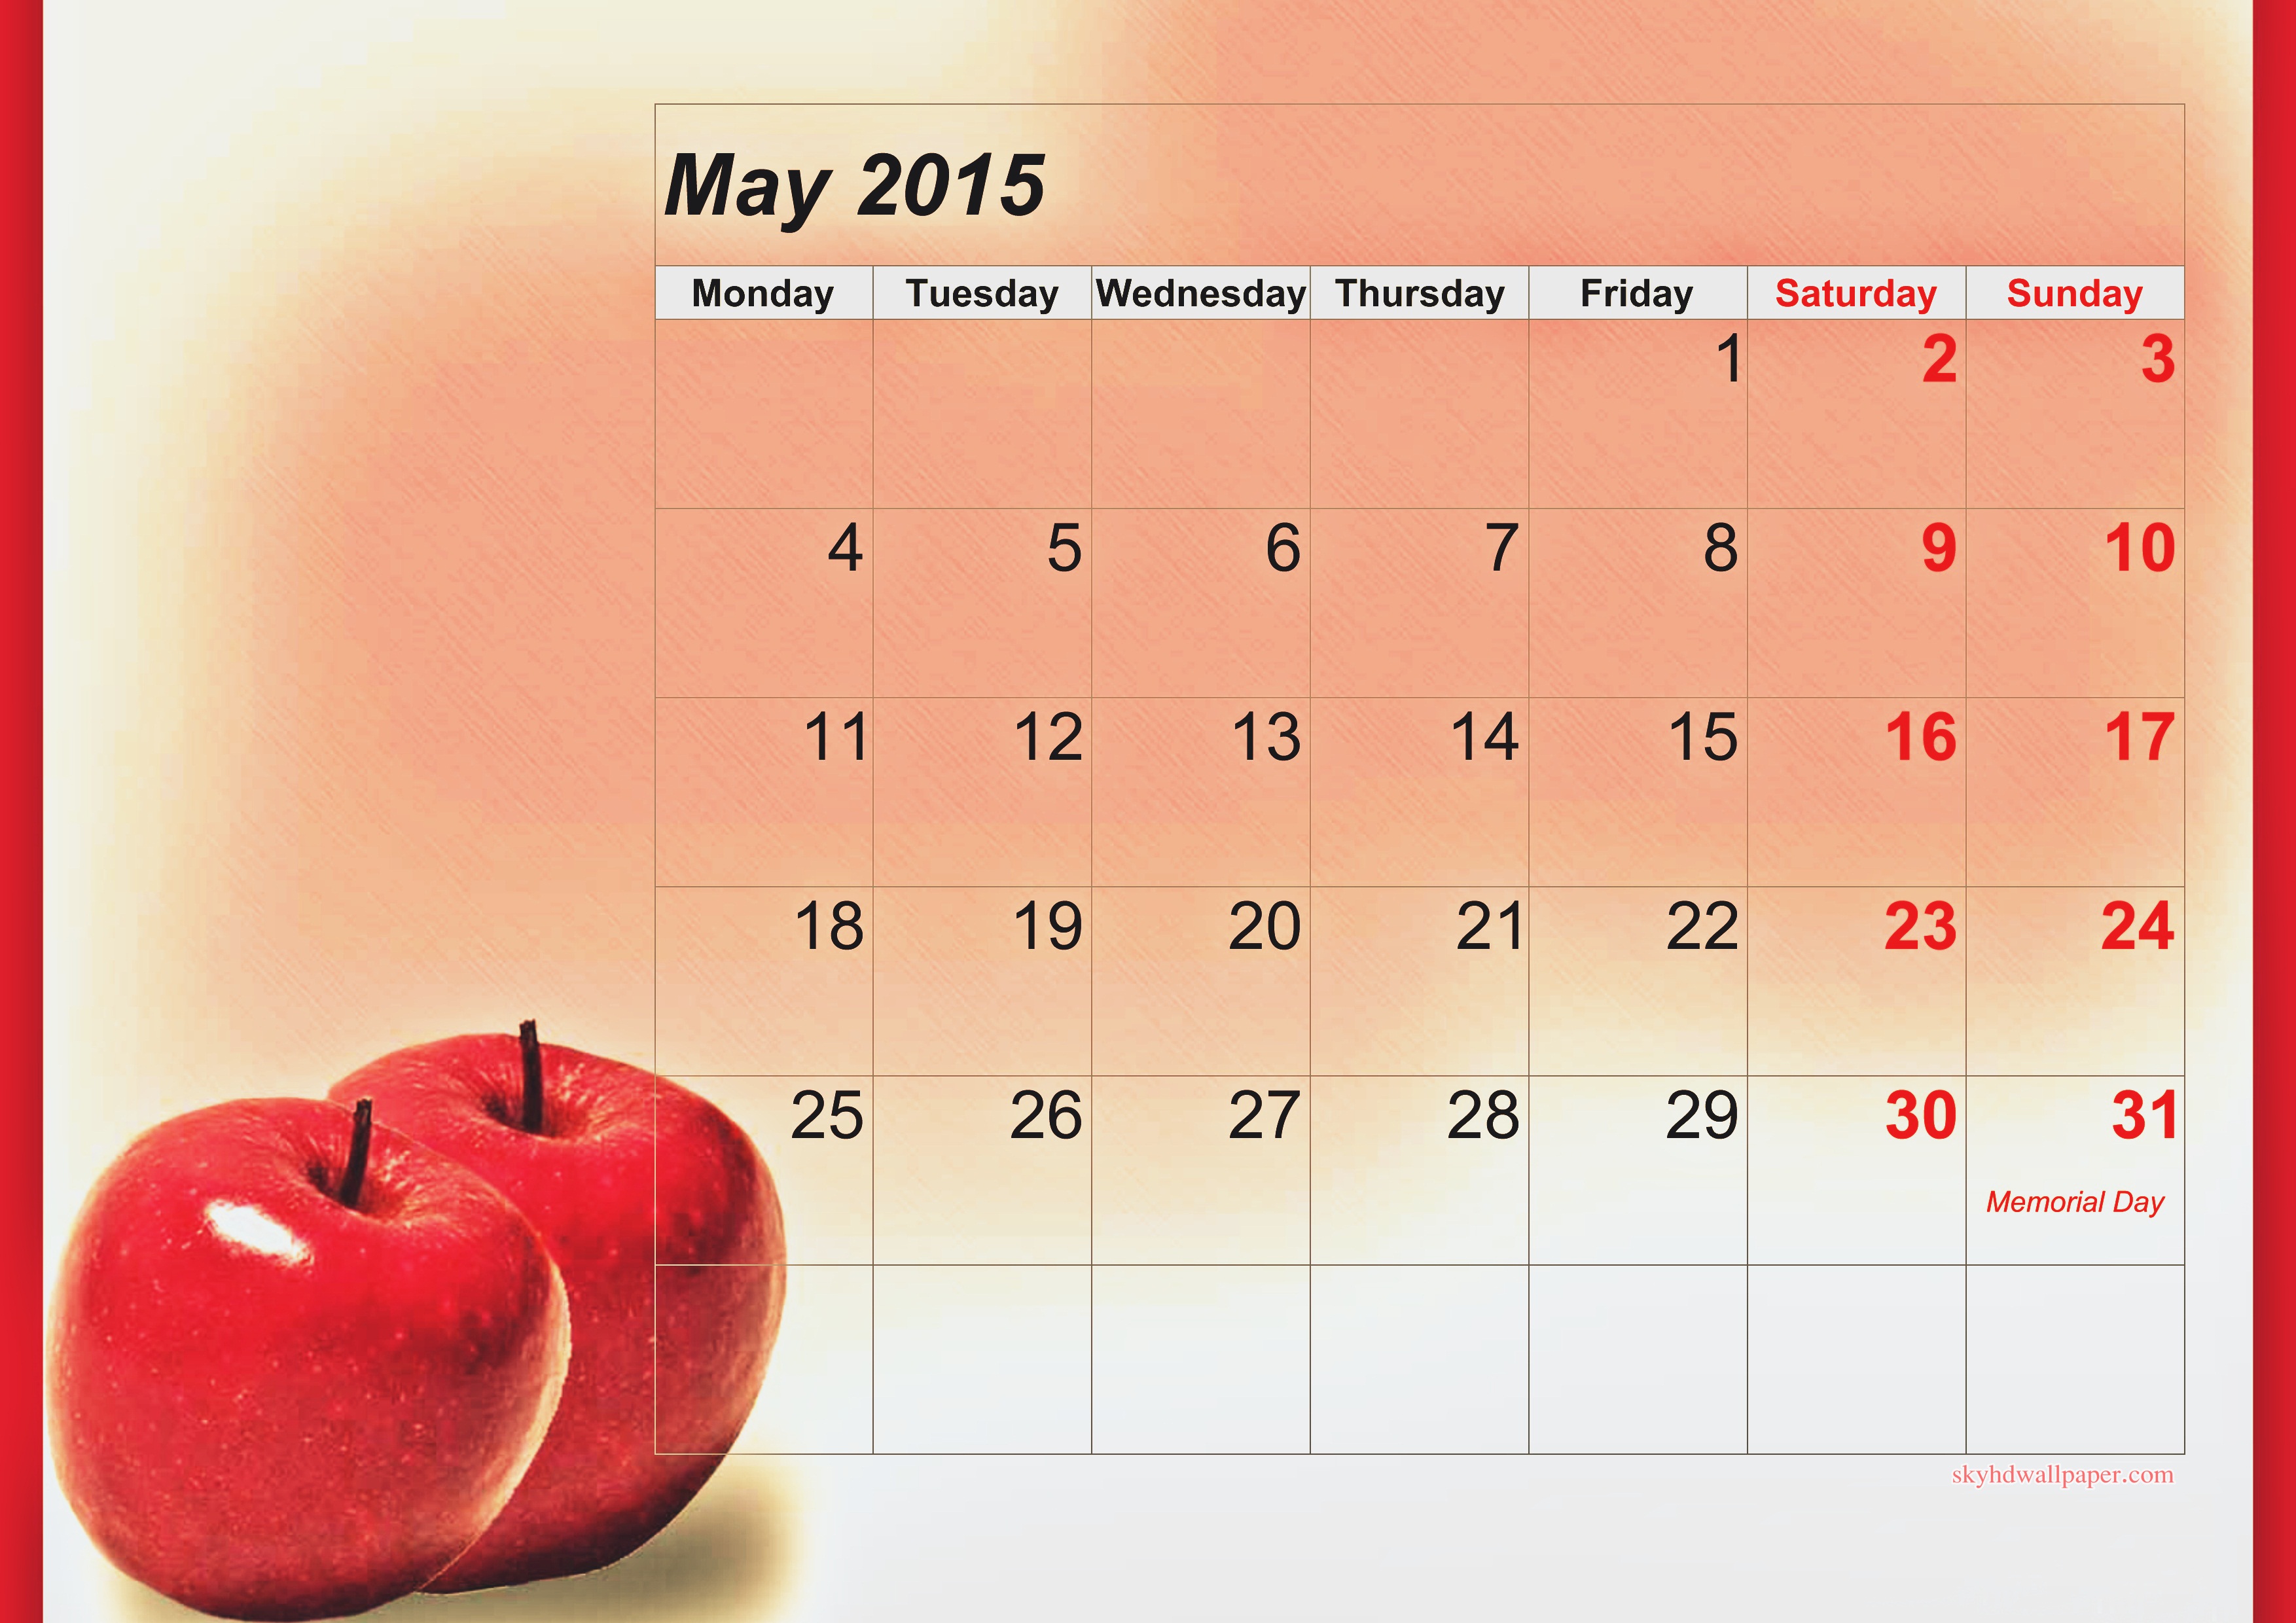 May Calendar Sky HD Wallpaper